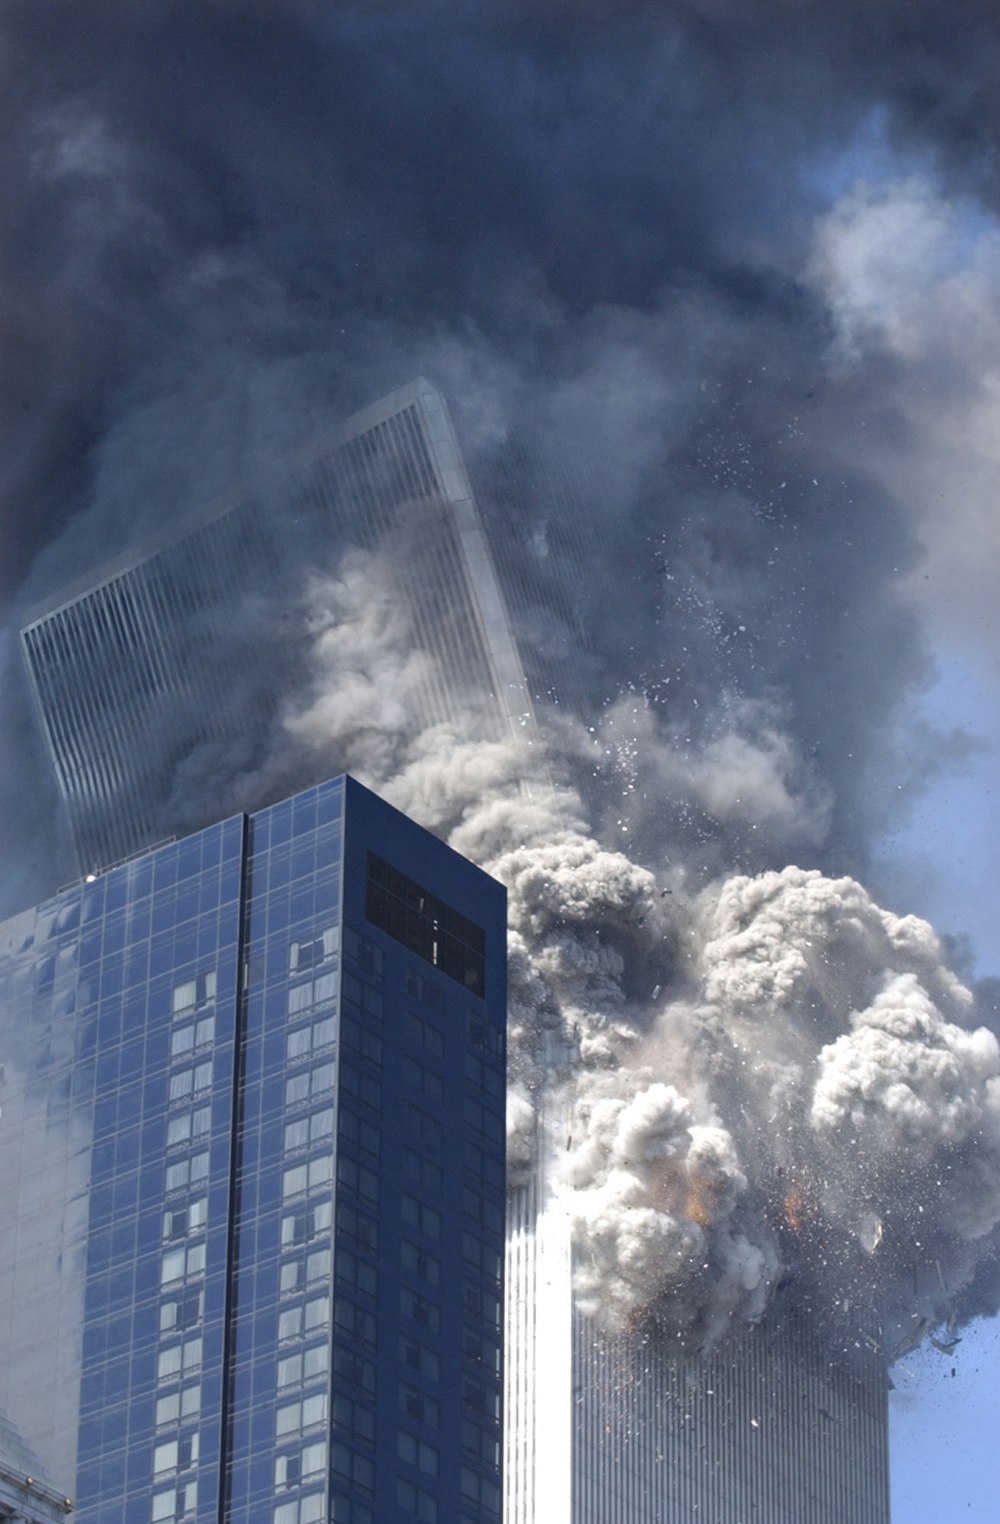 9/11 WTC-2 tower angular momentum